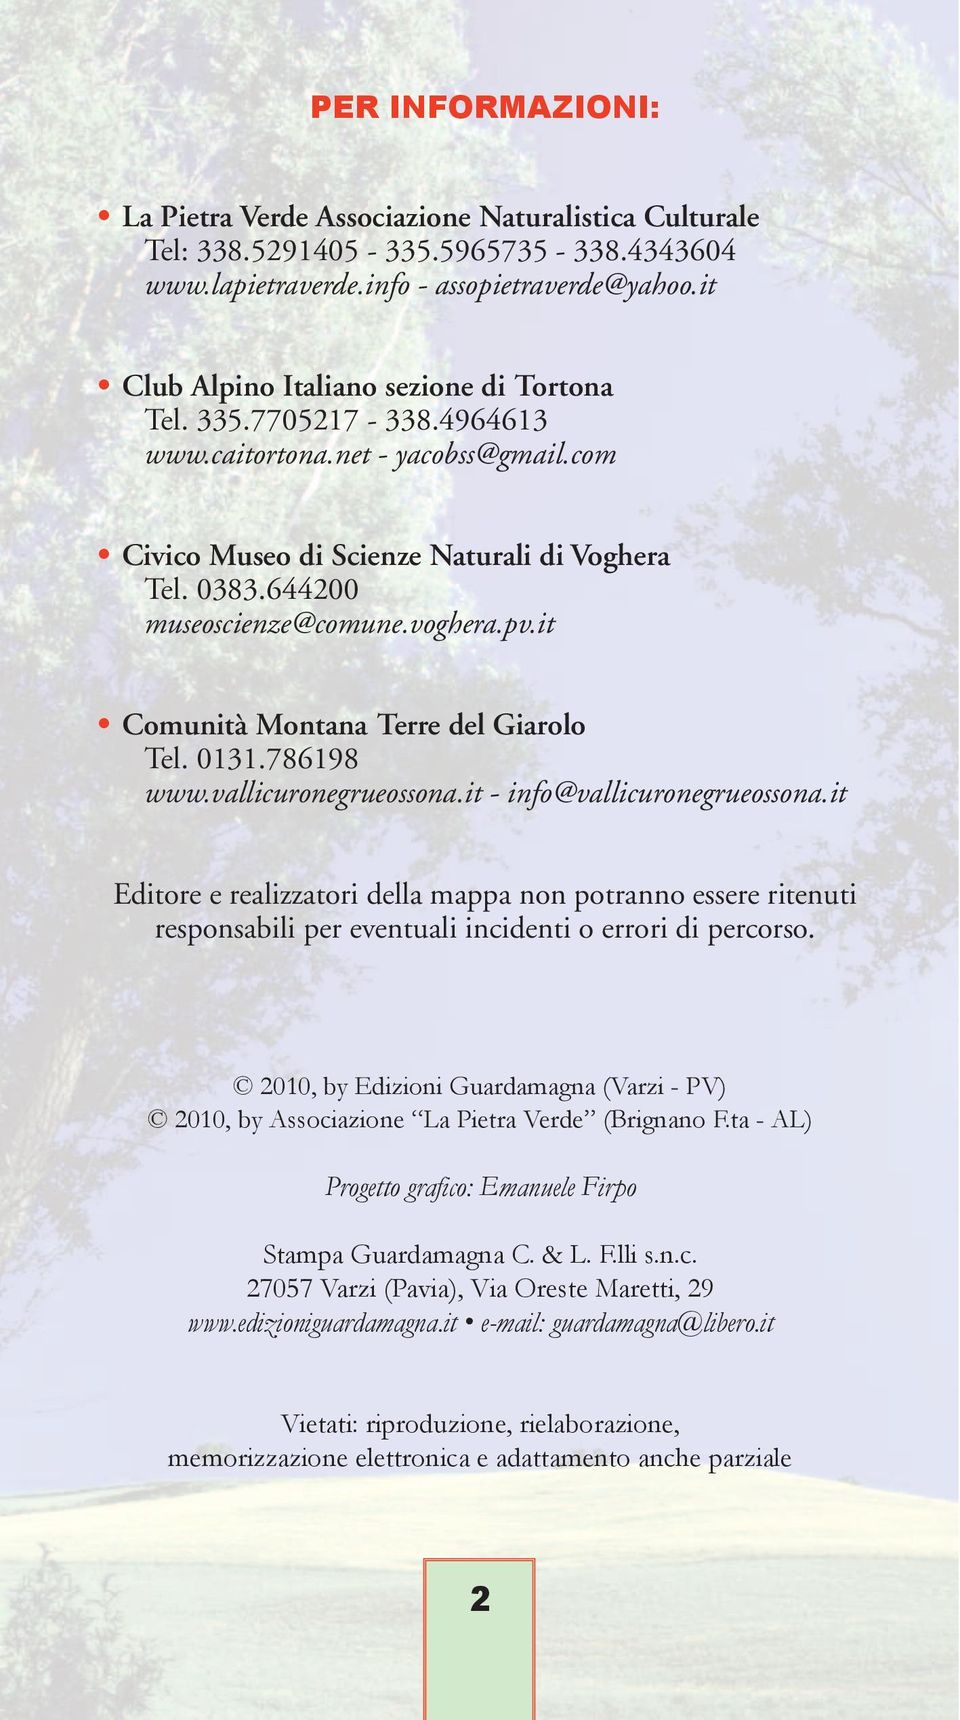 pv.it Comunità Montana Terre del Giarolo Tel. 0131.786198 www.vallicuronegrueossona.it - info@vallicuronegrueossona.